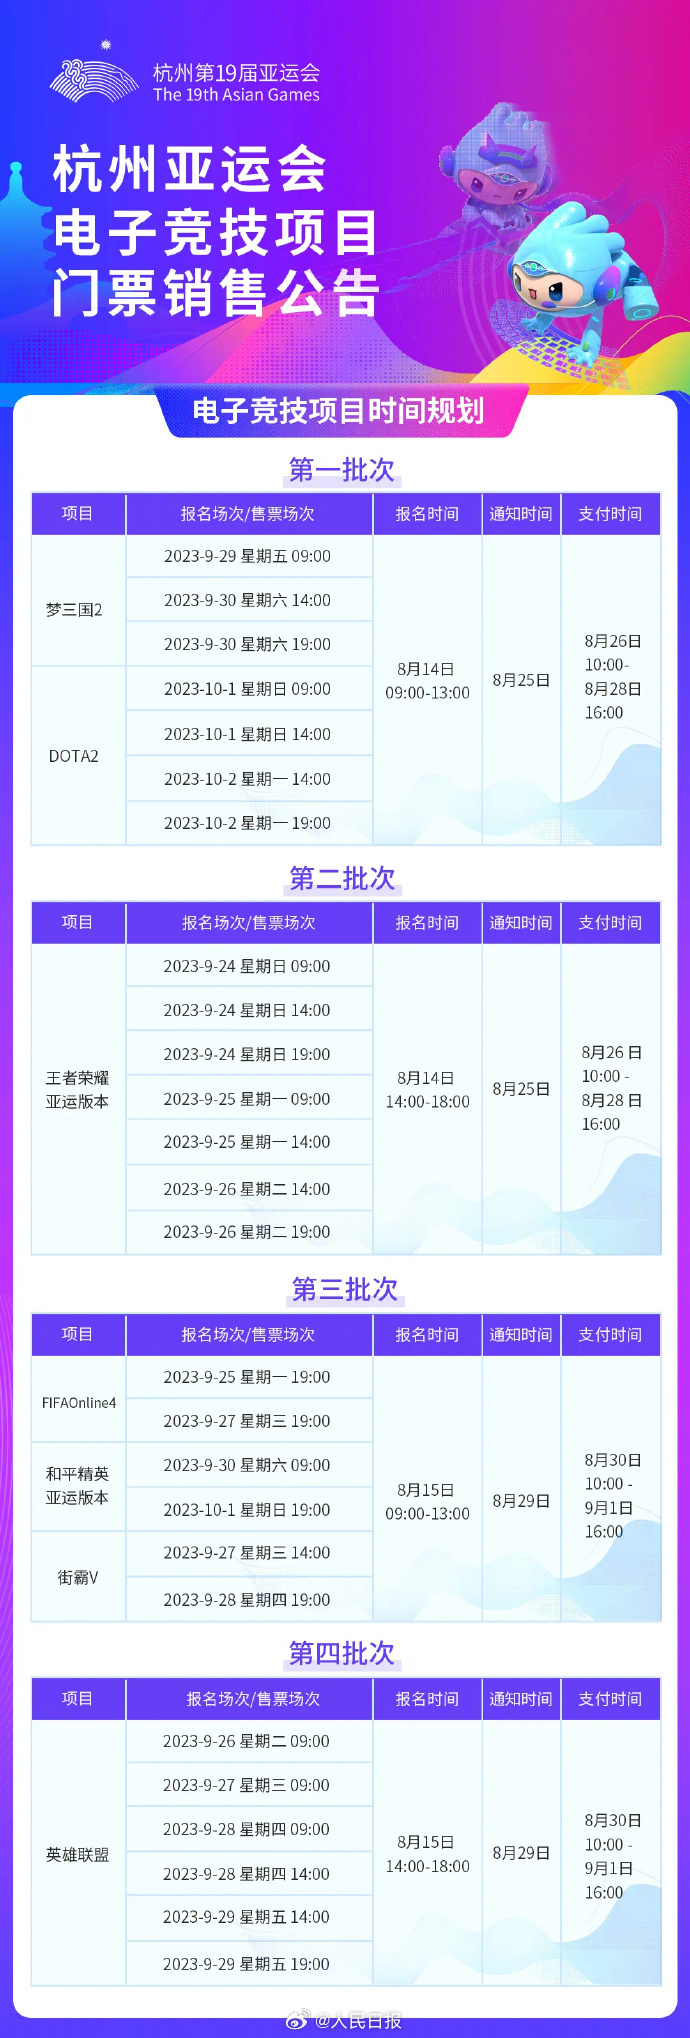 杭州第19屆亞運會電子競技門票售票時間表